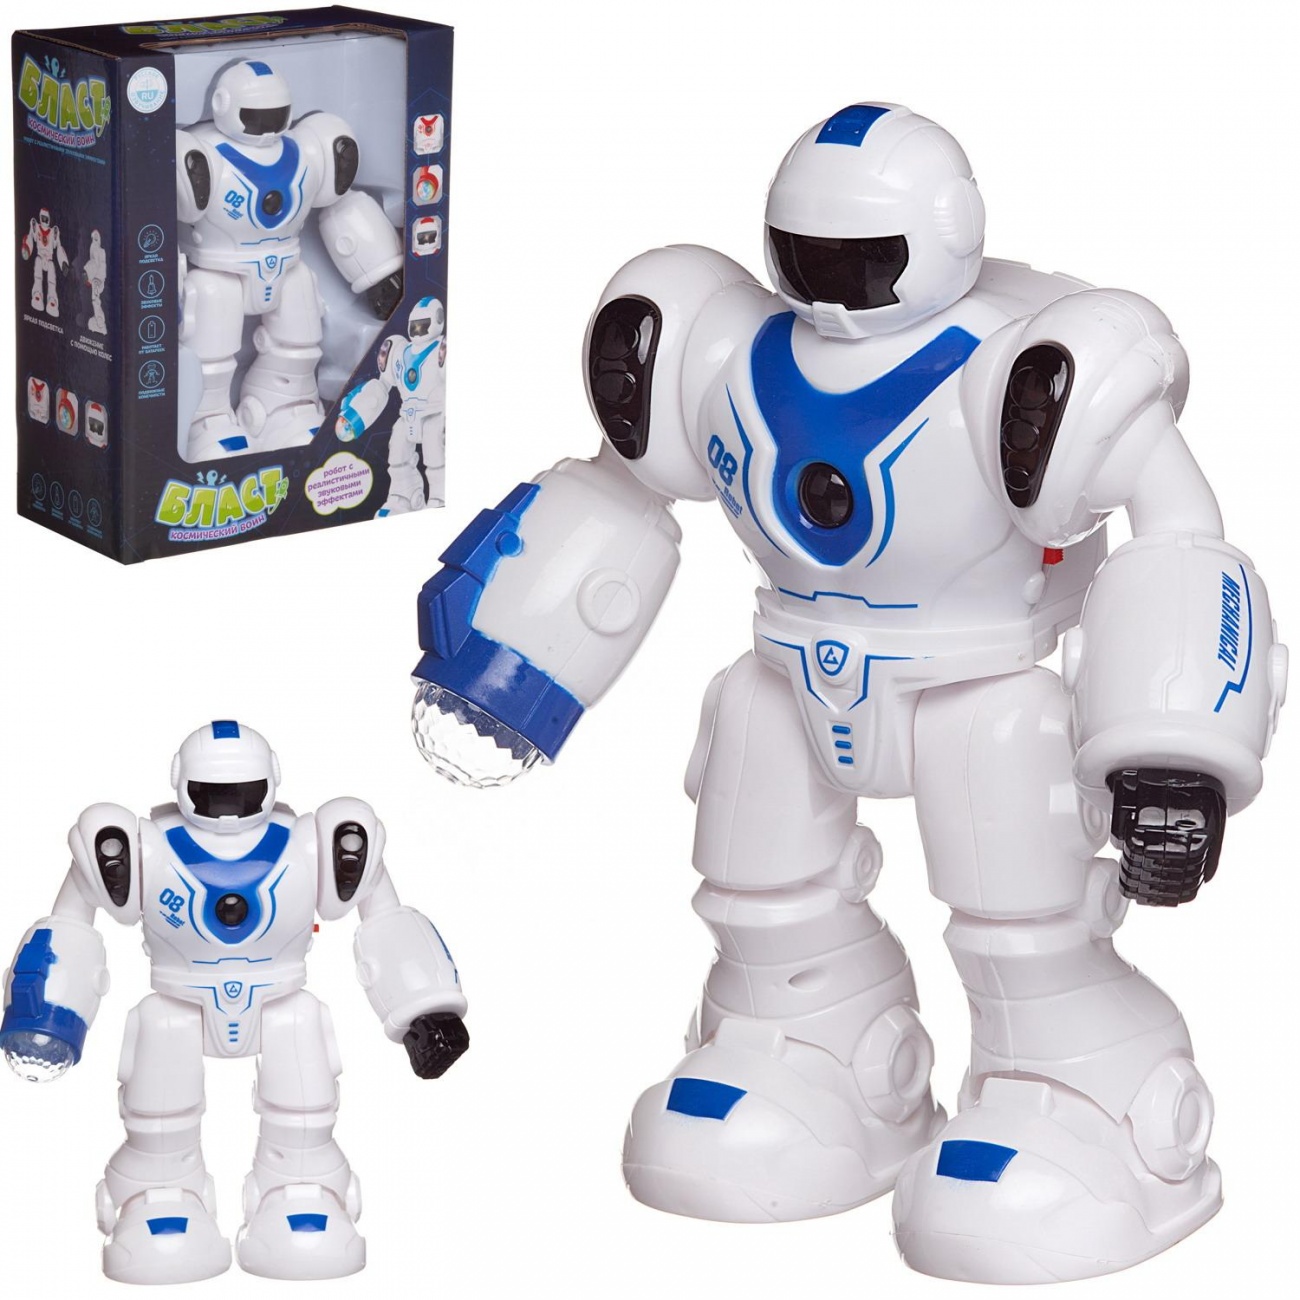 Робот Junfa Бласт Космический воин электромеханический свет/звук бело-синий ZY1215201/синий